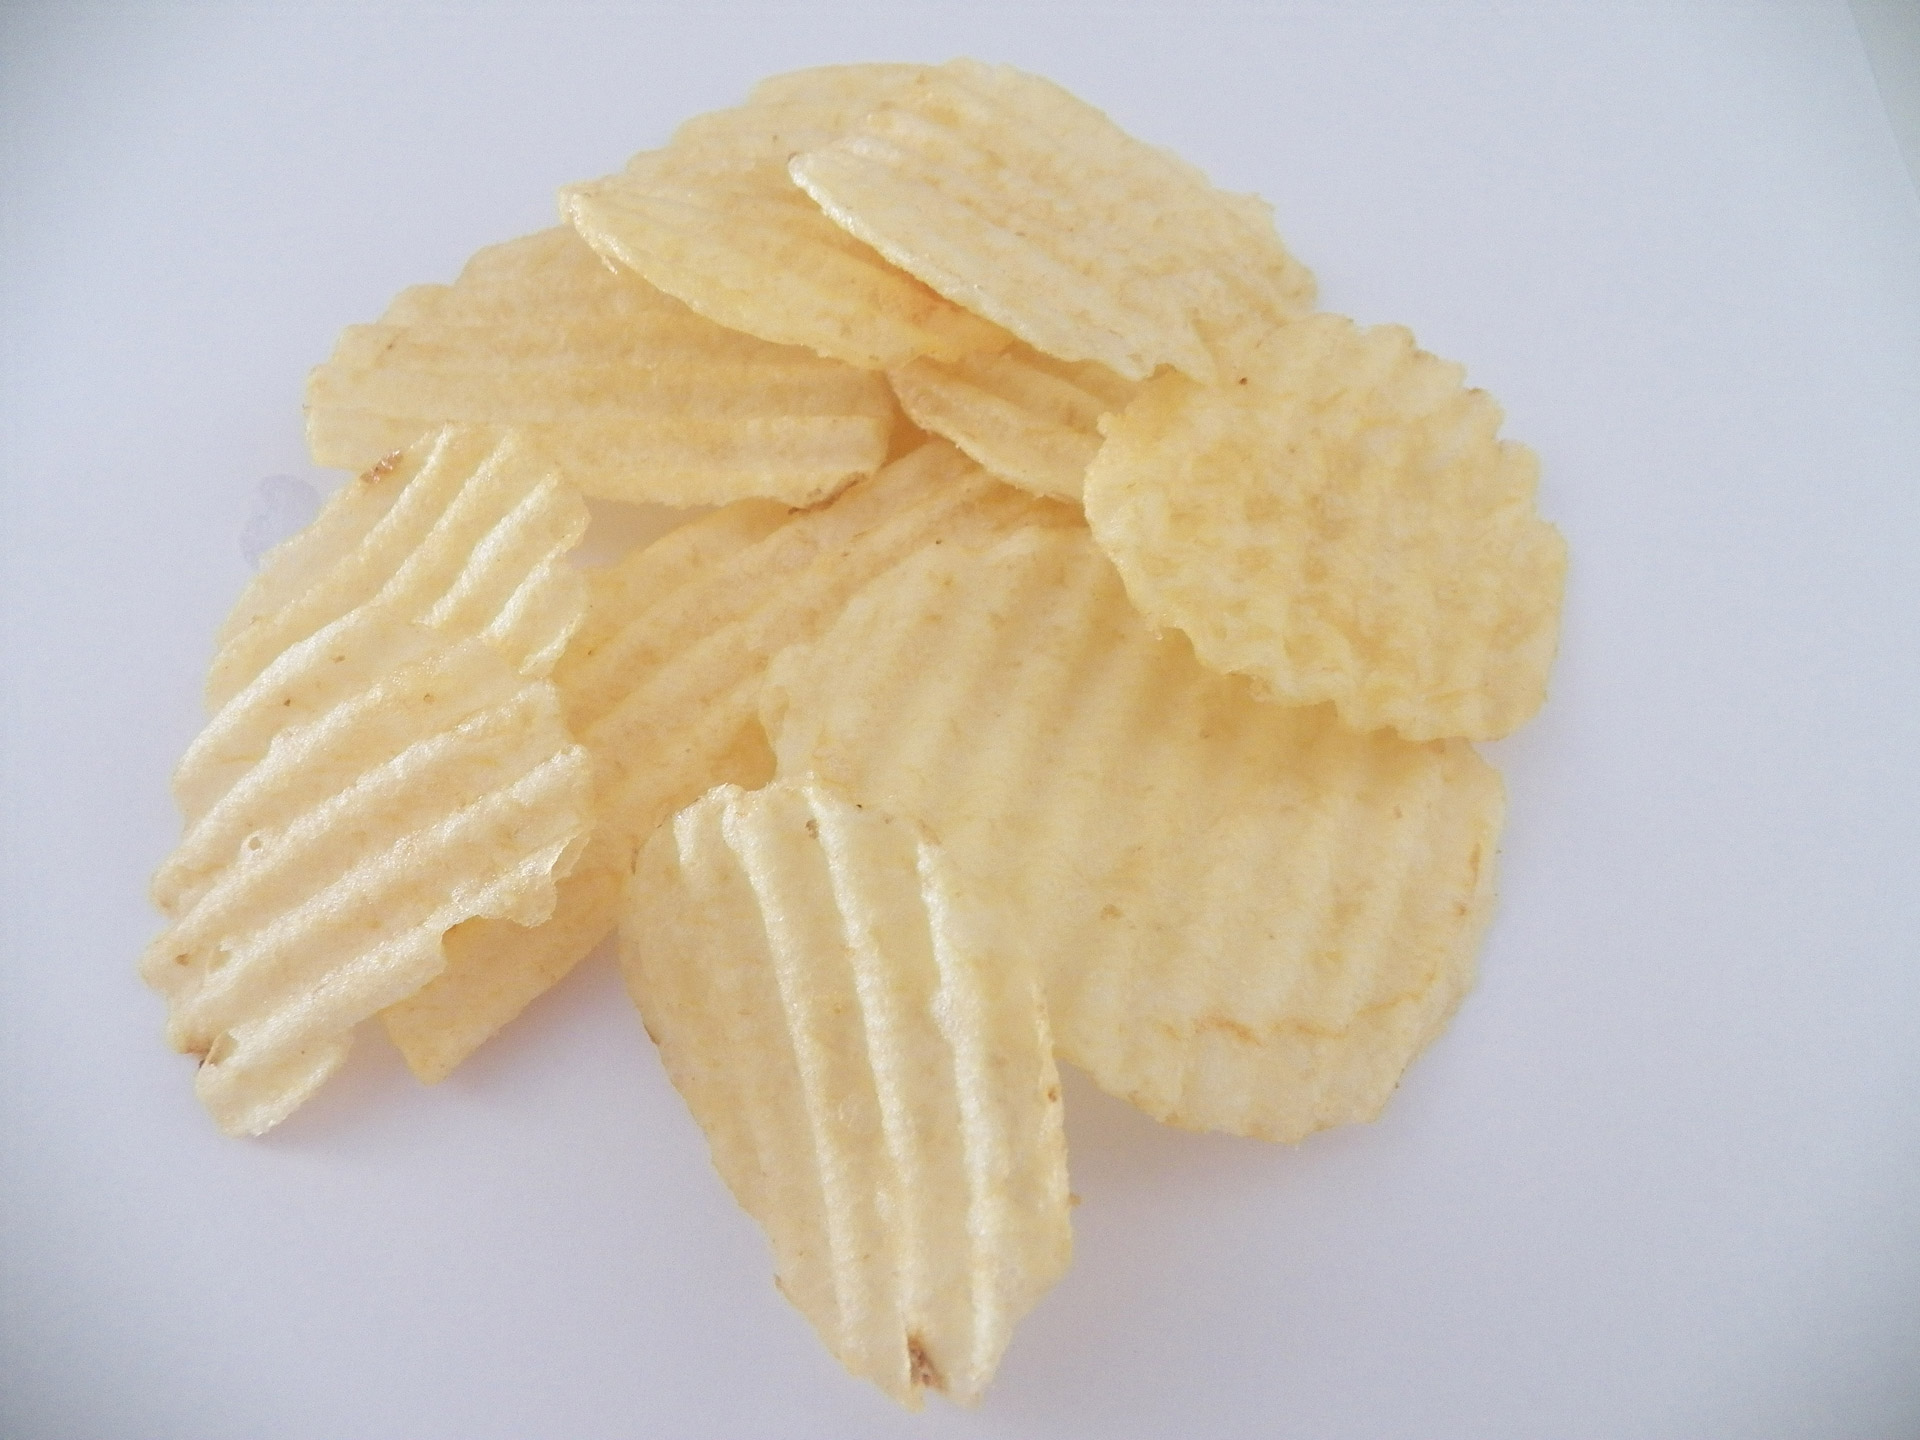 Southwestern Potato Slices-Better Than Chips!